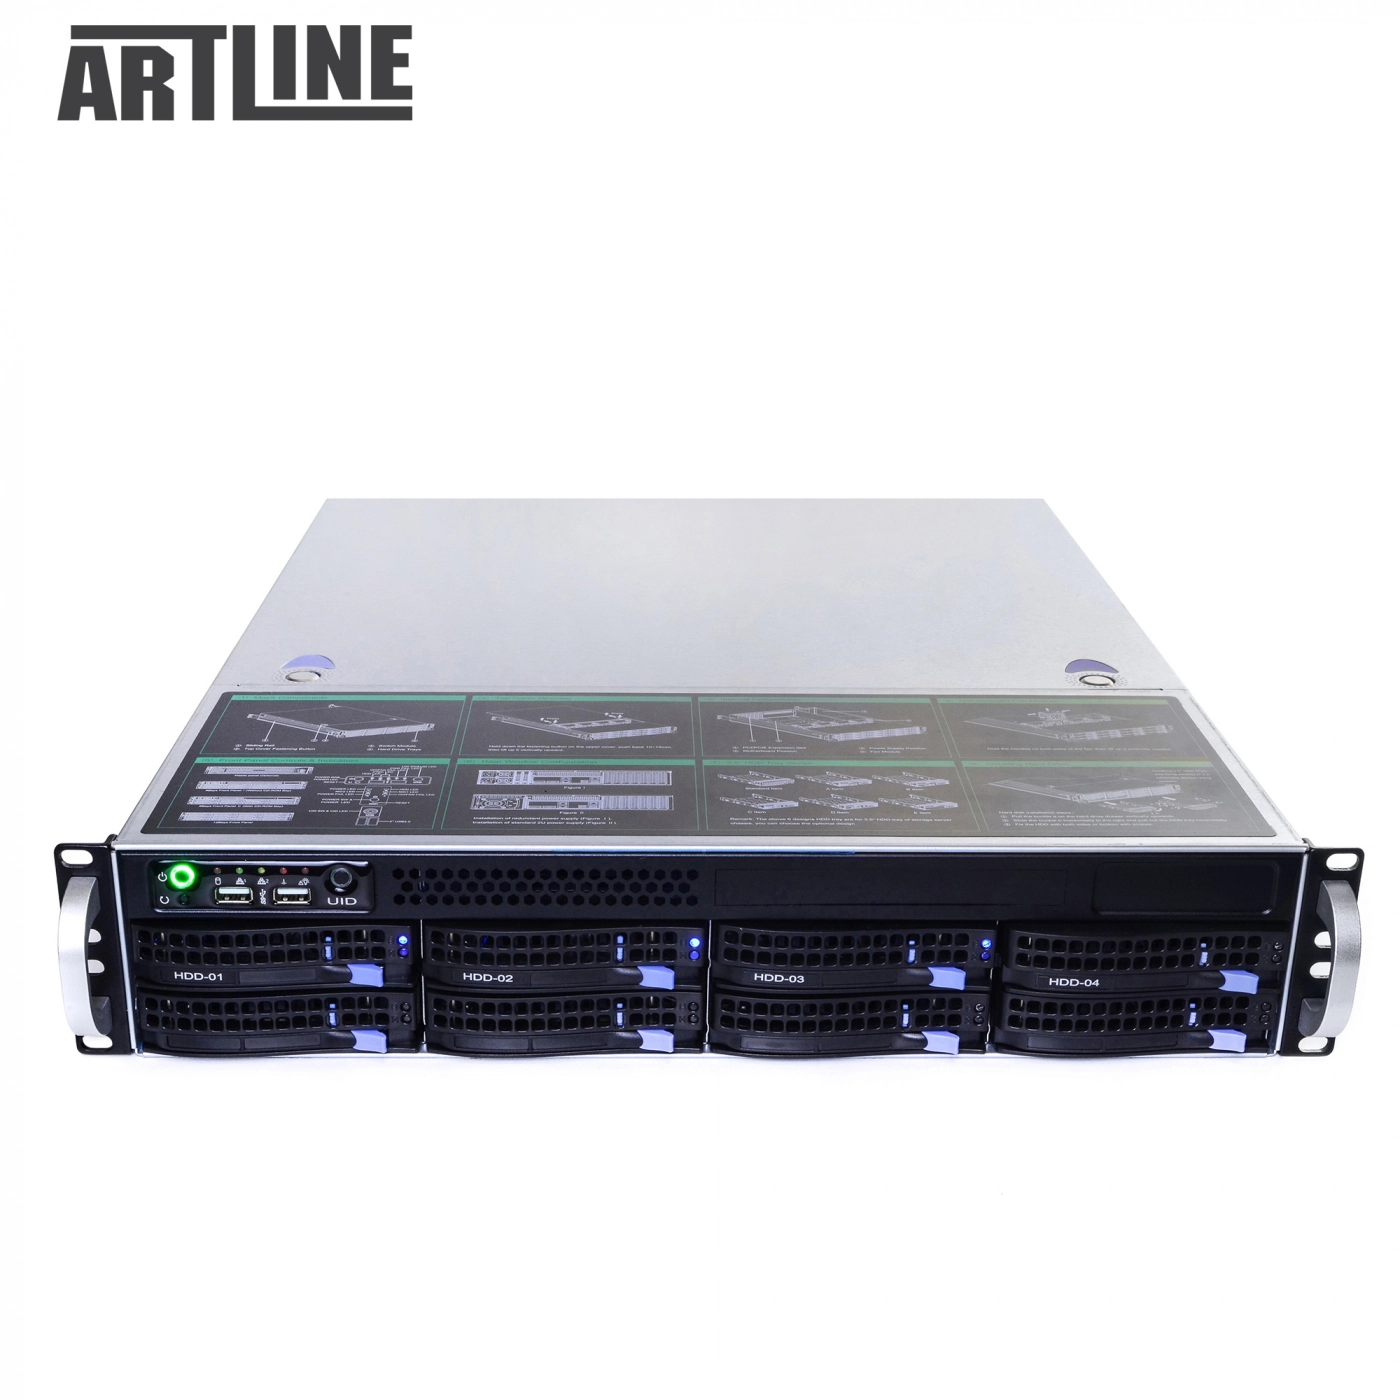 Купить Сервер ARTLINE Business R33v04 - фото 10